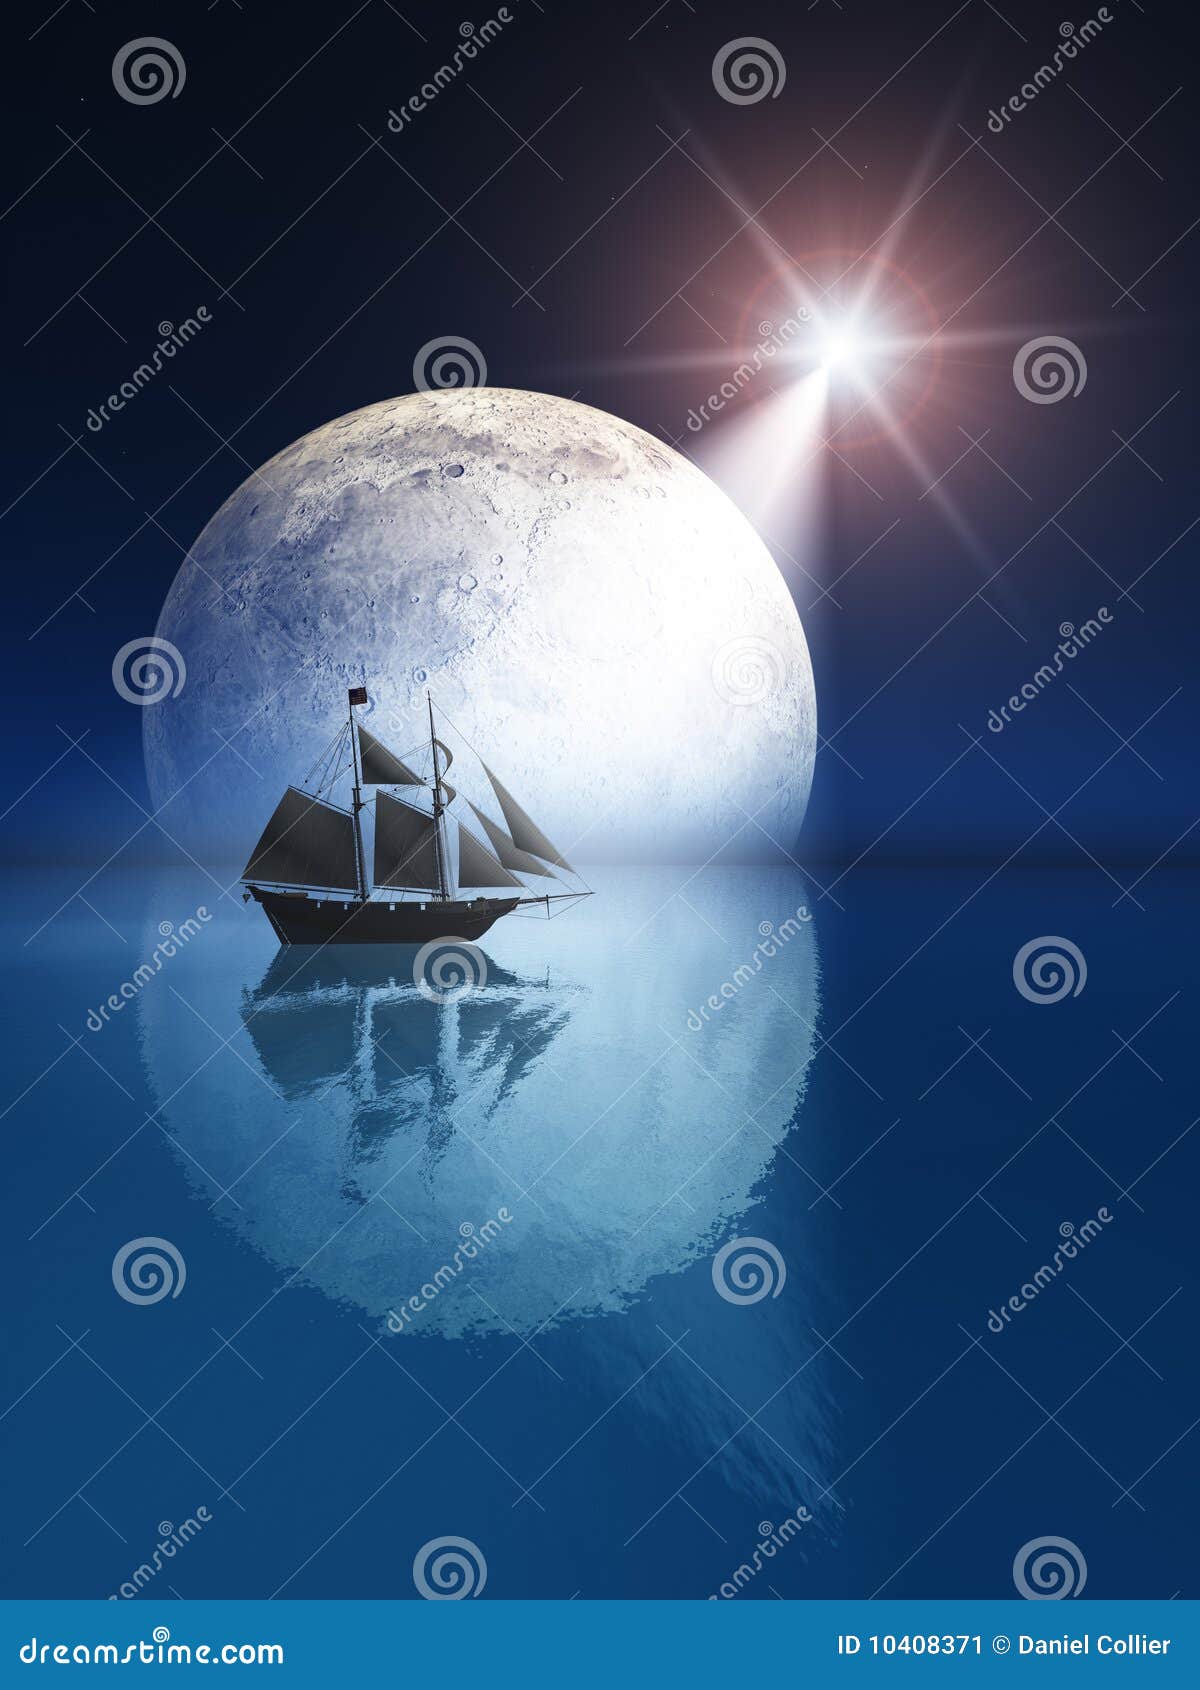 Lua cheia e estrela sobre o navio. Uma ilustração de uma lua cheia da noite sobre o mar com a estrela de tiro brilhante.